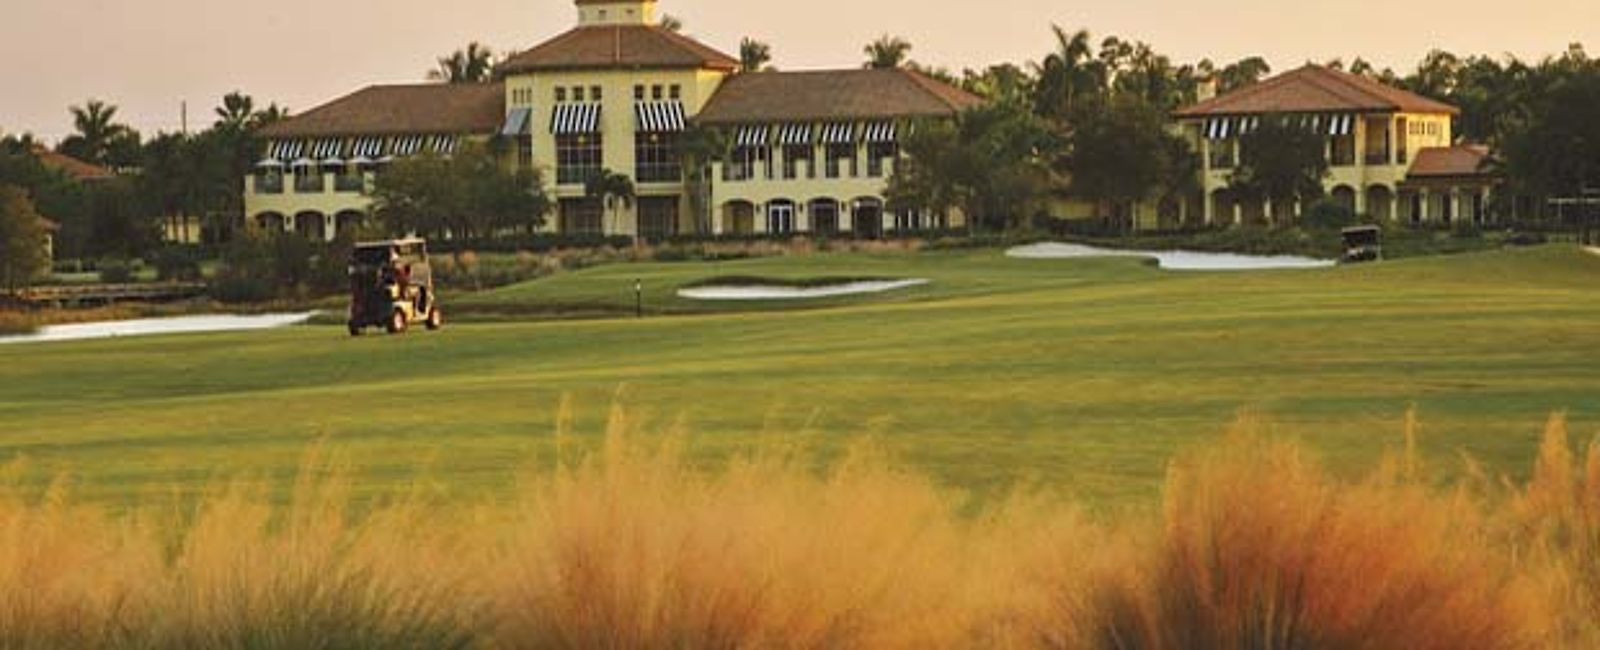 HOTEL TIPPS
 The Ritz-Carlton Naples Golf Resort 
 Luxus Golf Resort zwischen hohen Palmen 